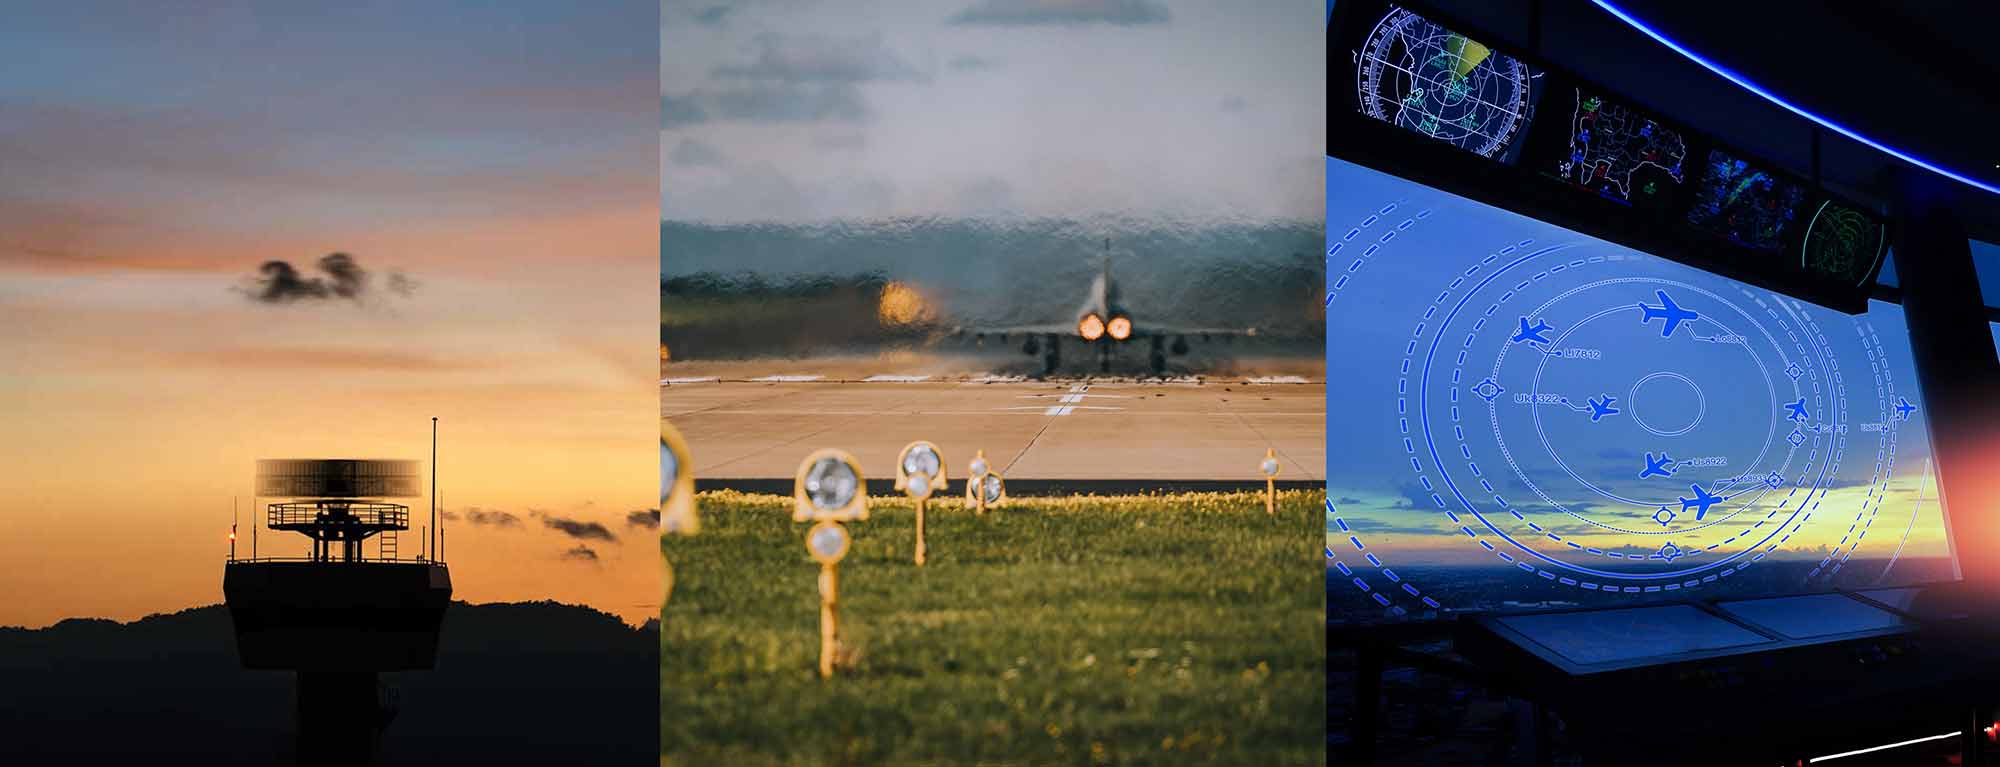 ag万博官网空中客车智能提供用于空军的指挥和控制应用